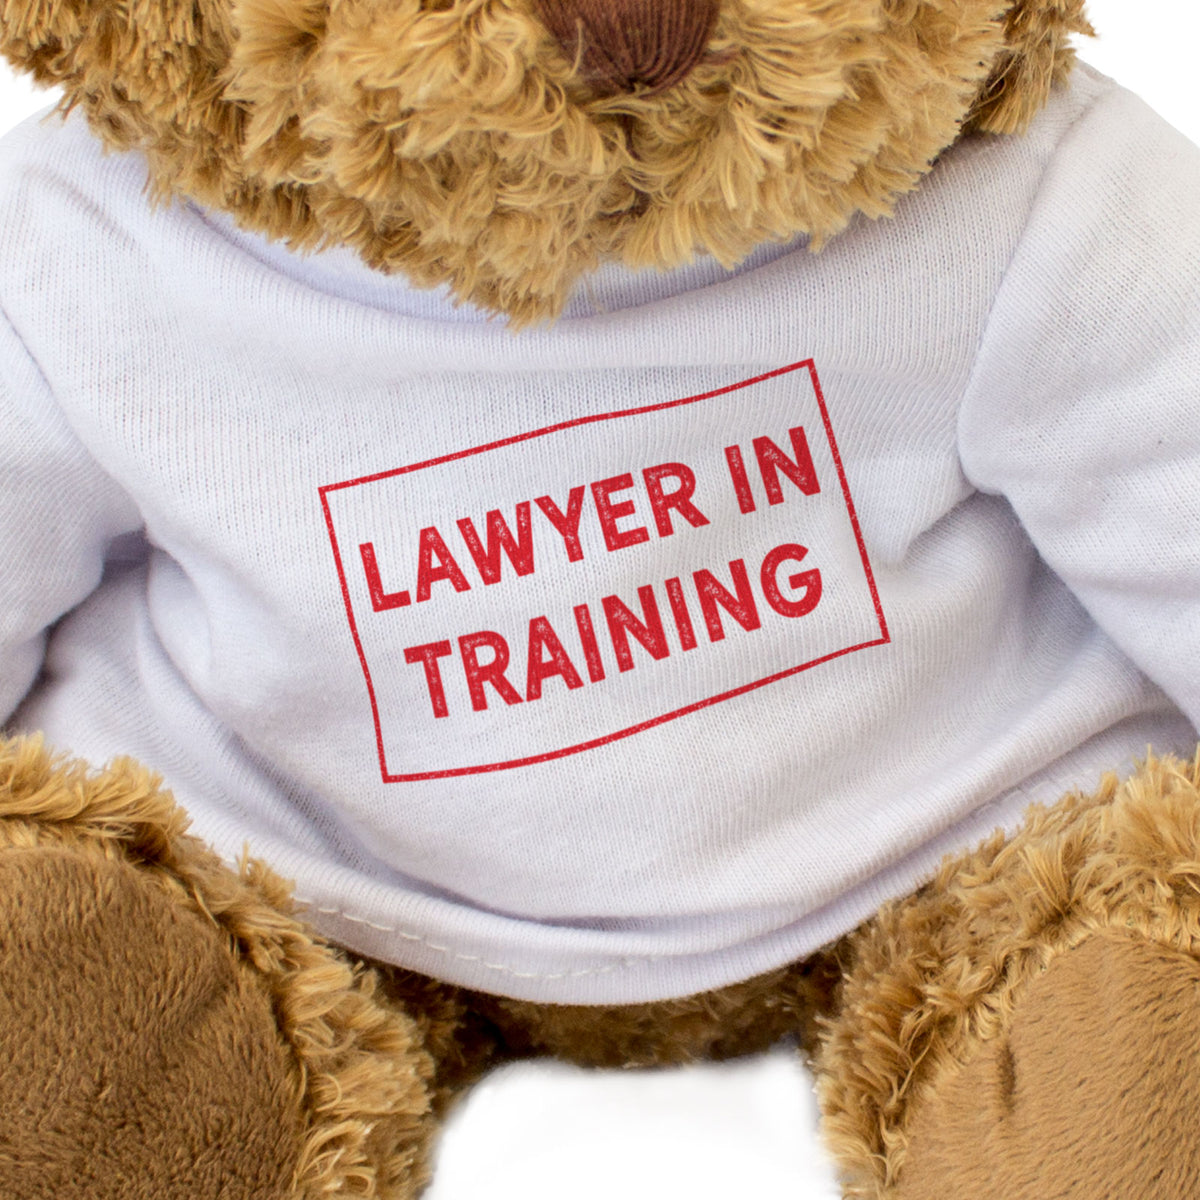 Lawyer In Training - Teddy Bear